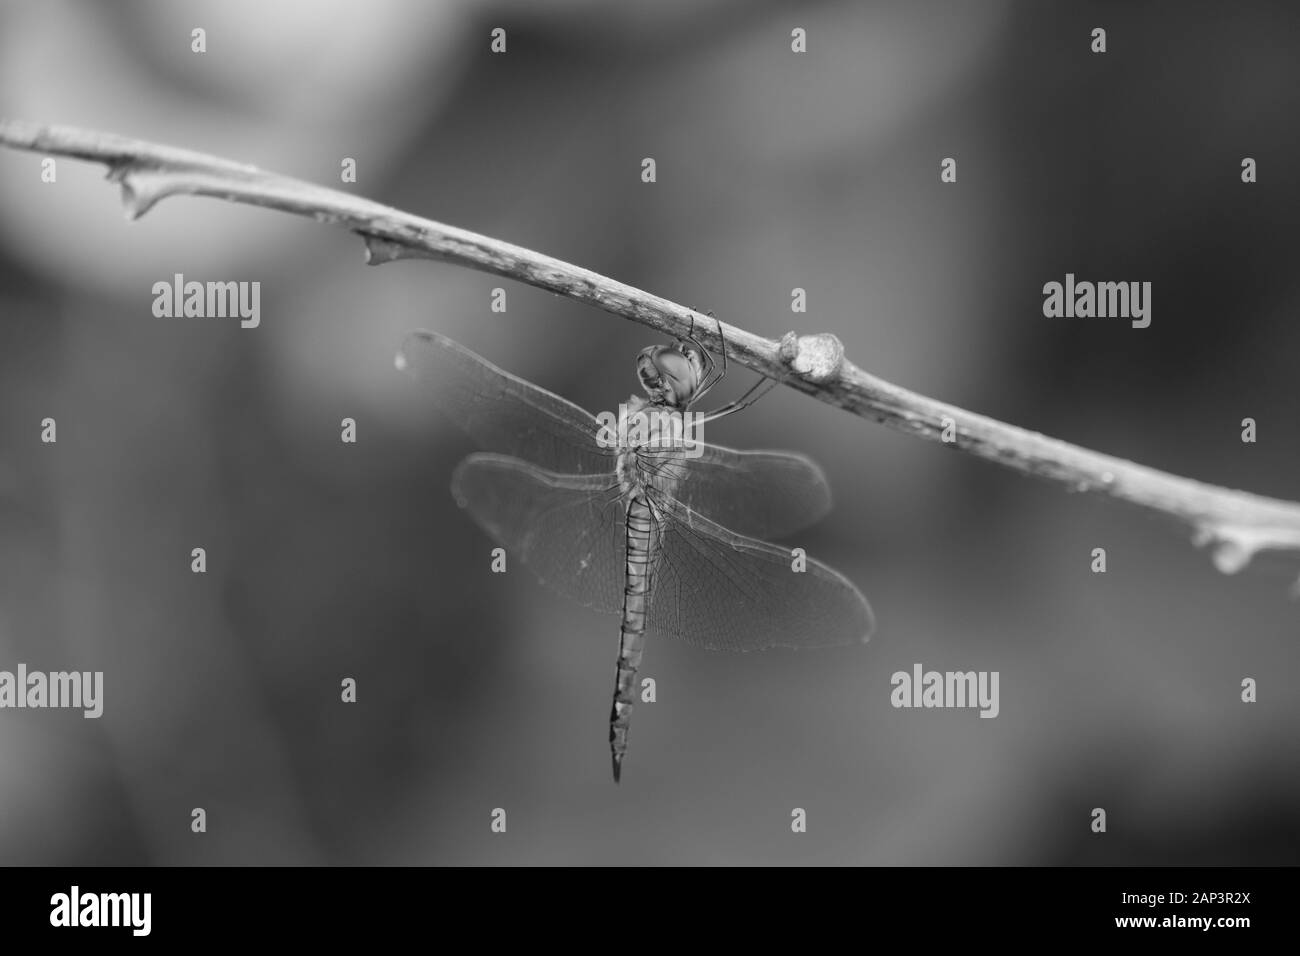 Insecte macro closeup shot de dragon fly sur le fond monochrome Banque D'Images